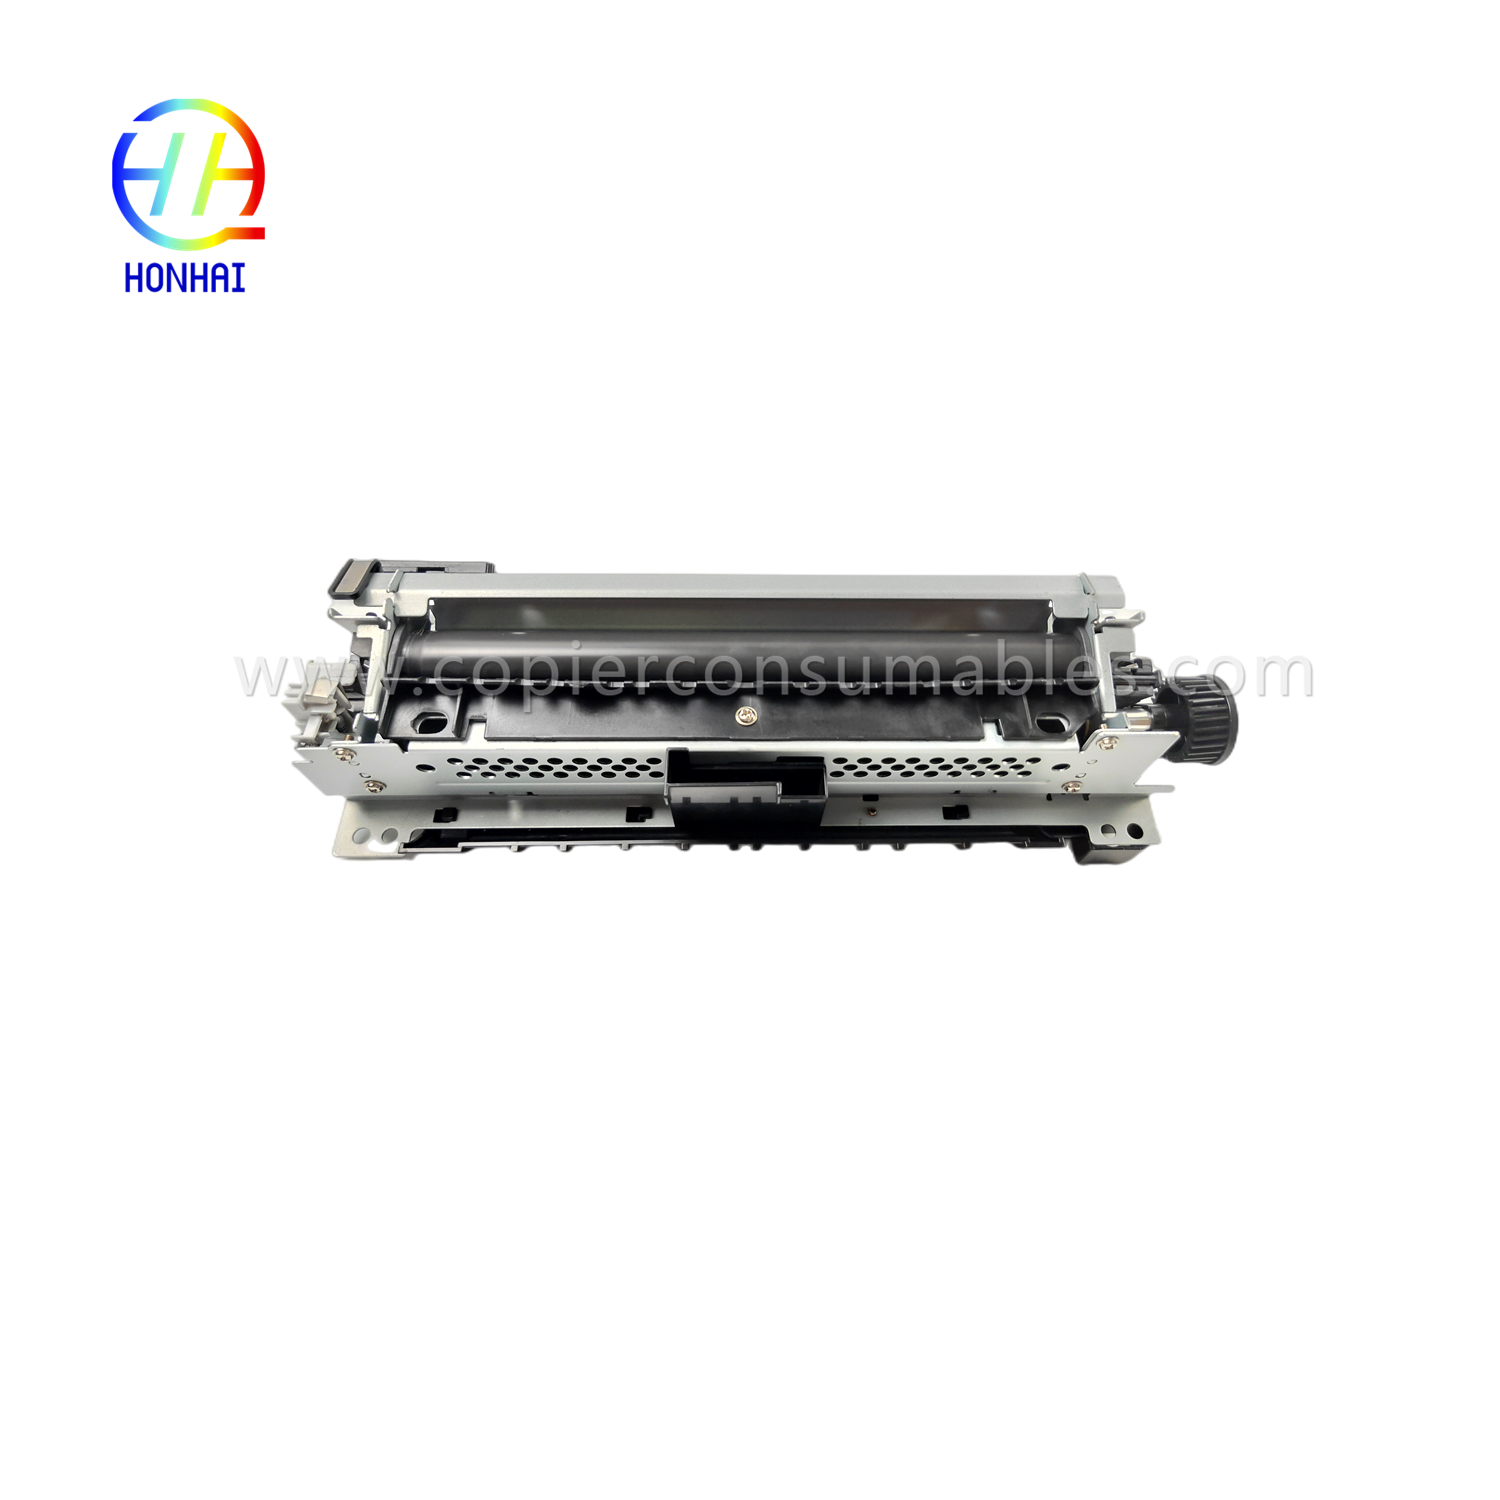 https://www.copierconsumables.com/fuser-assemble-220v-japan-for-hp-521-525-m521-m525-rm1-8508-rm1-8508-000-fuser-unit-product/